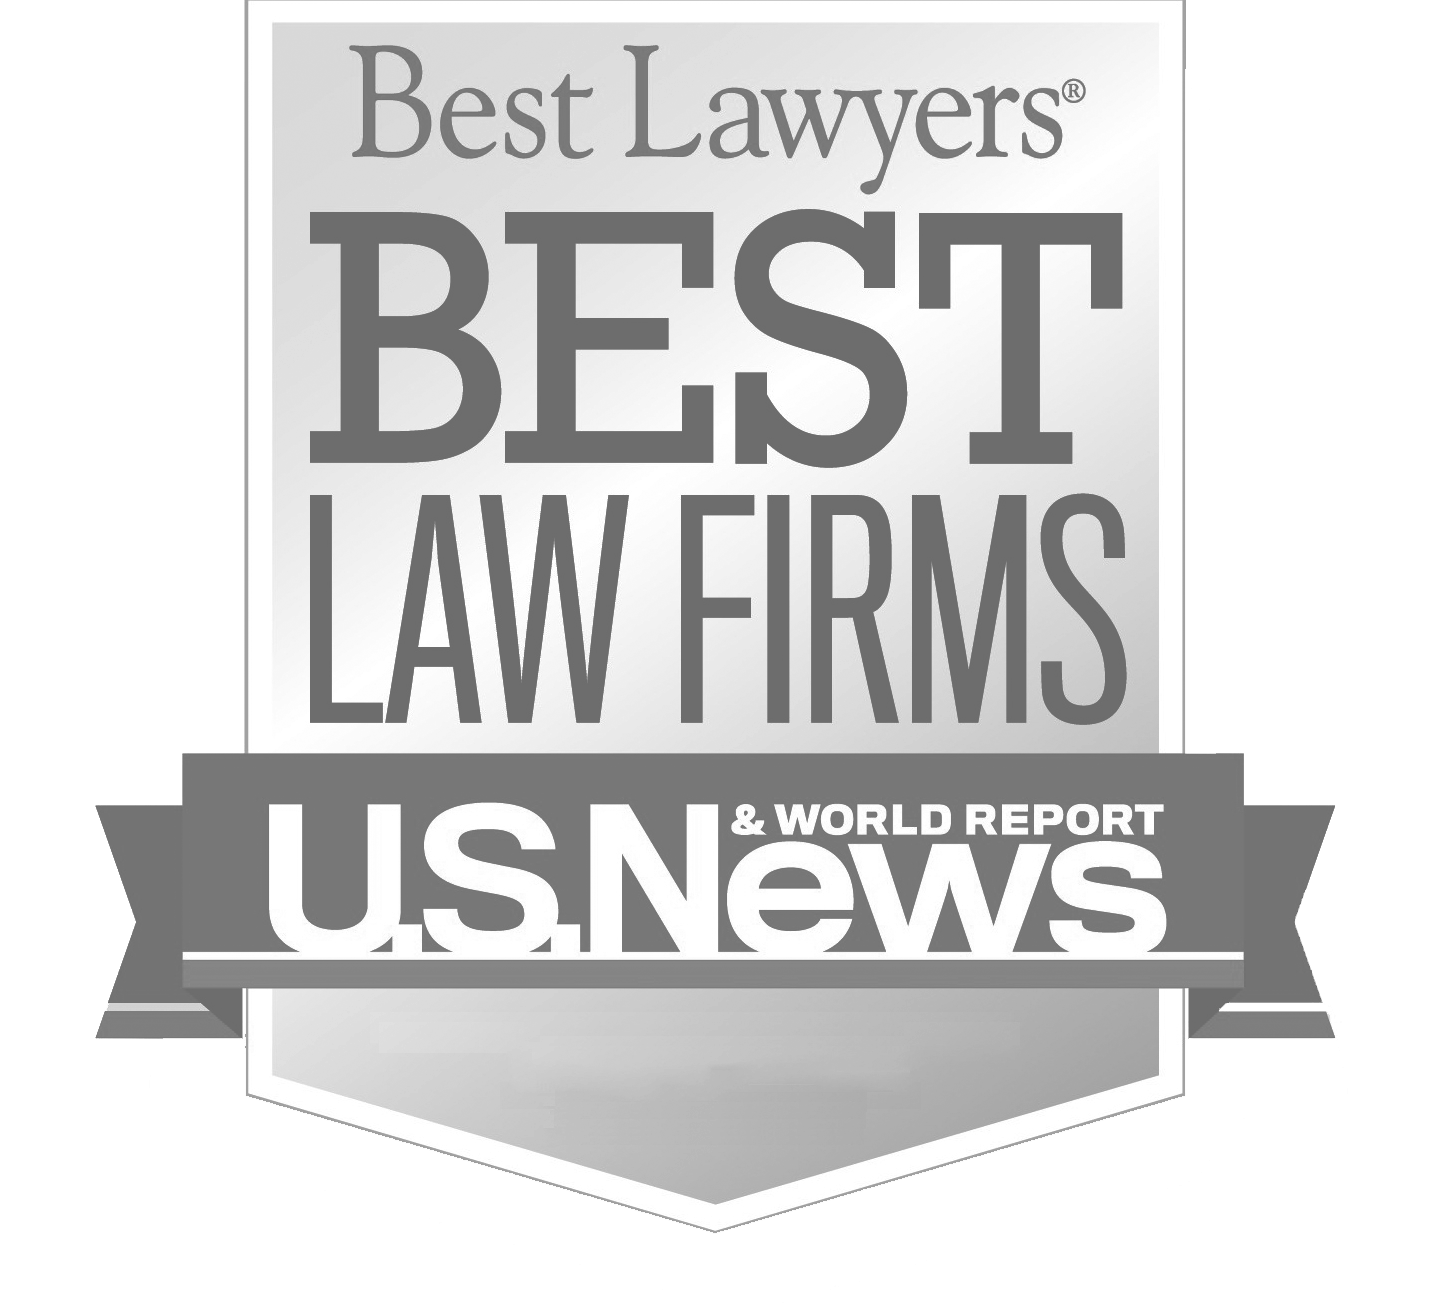 Best-Law-Firms-Blank